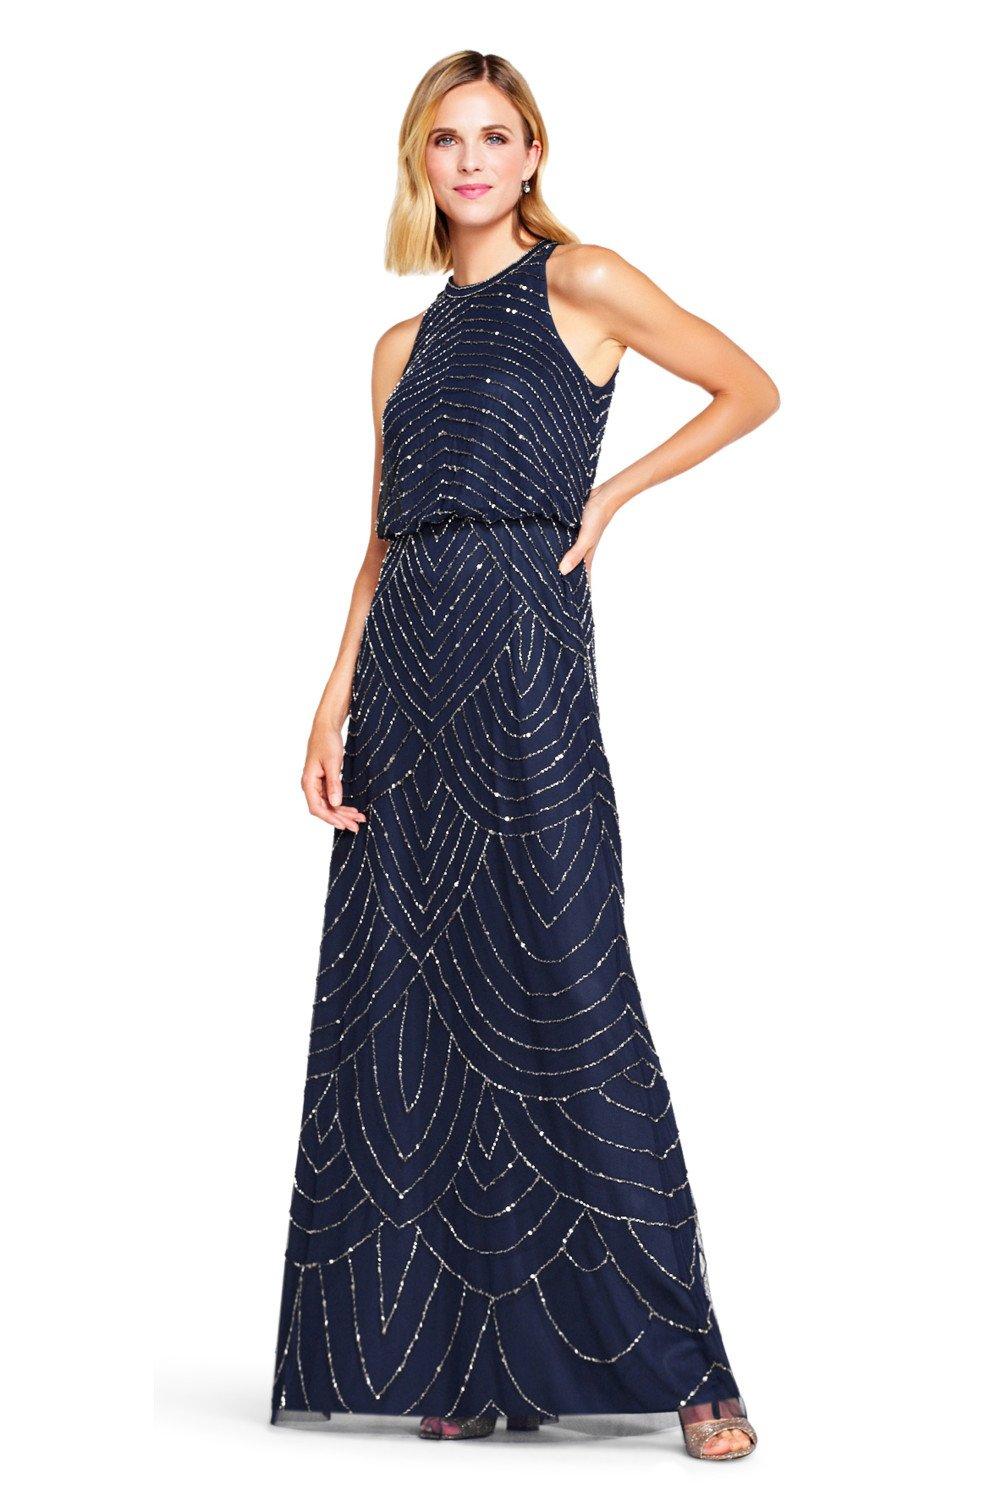 Платье с бретельками из бисера Adrianna Papell, темно-синий женское вечернее платье золотистое платье с длинным рукавом и круглым вырезом расшитое бисером 2021